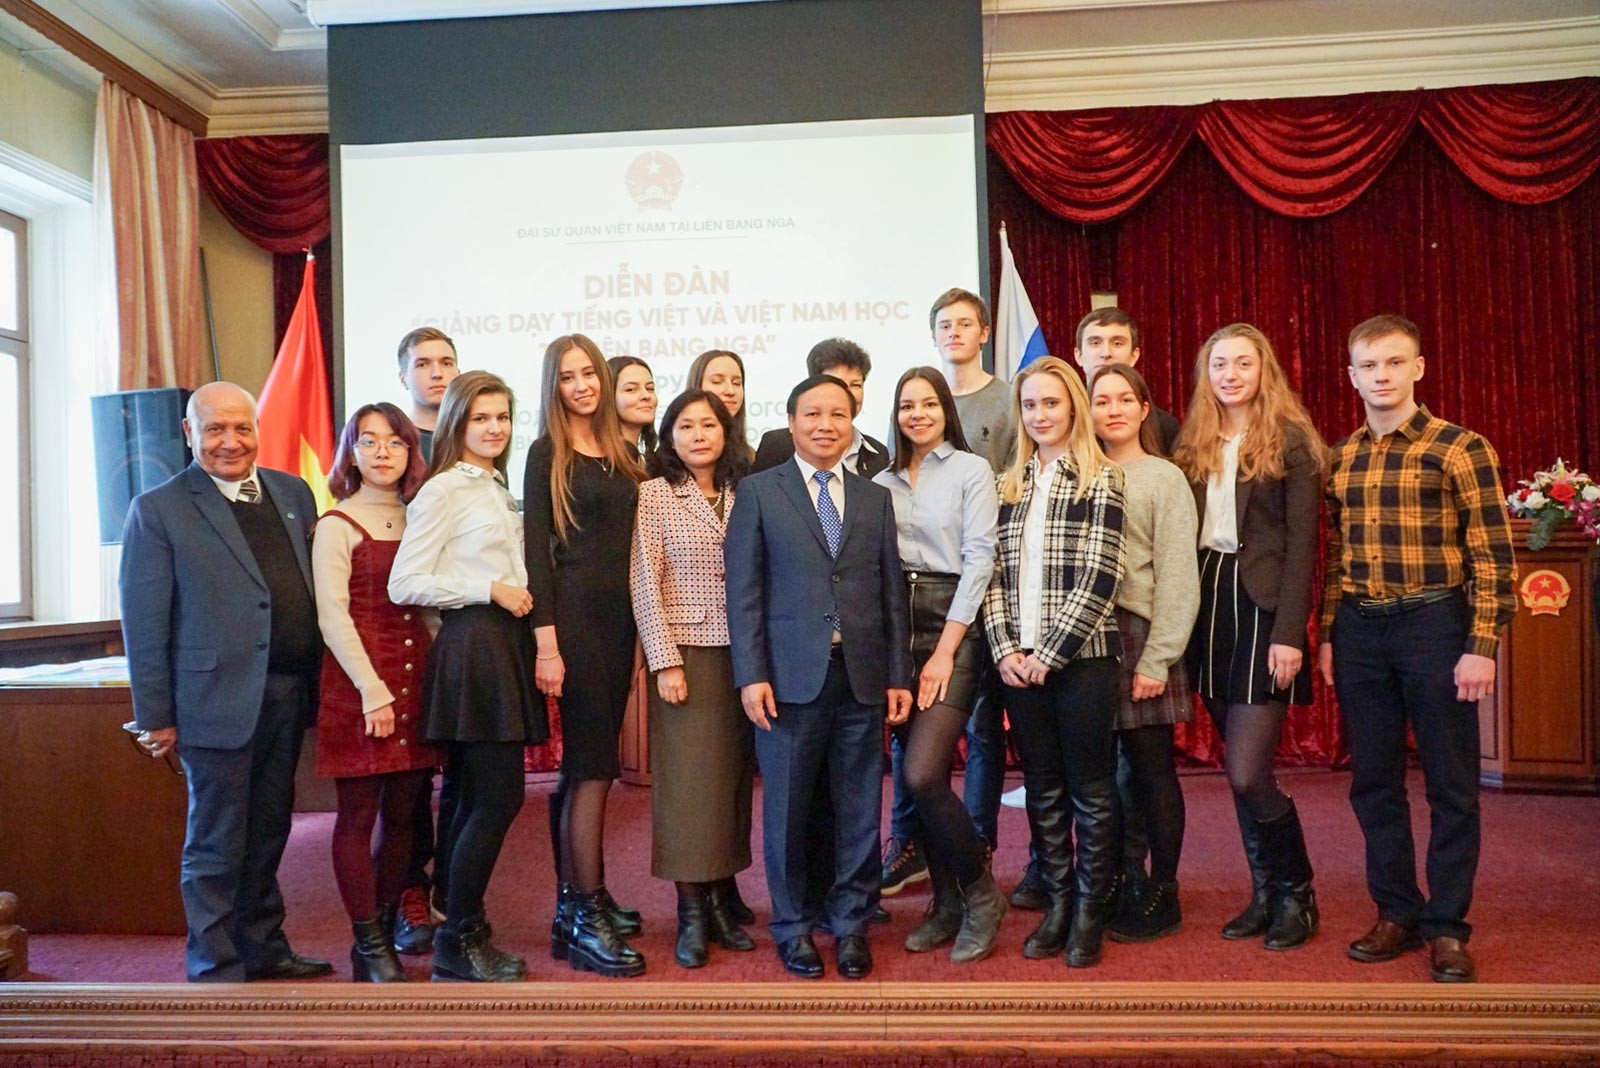 Đại sứ Ngô Đức Mạnh với các sinh viên Nga học tiếng Việt tại Diễn đàn tiếng Việt 2019.